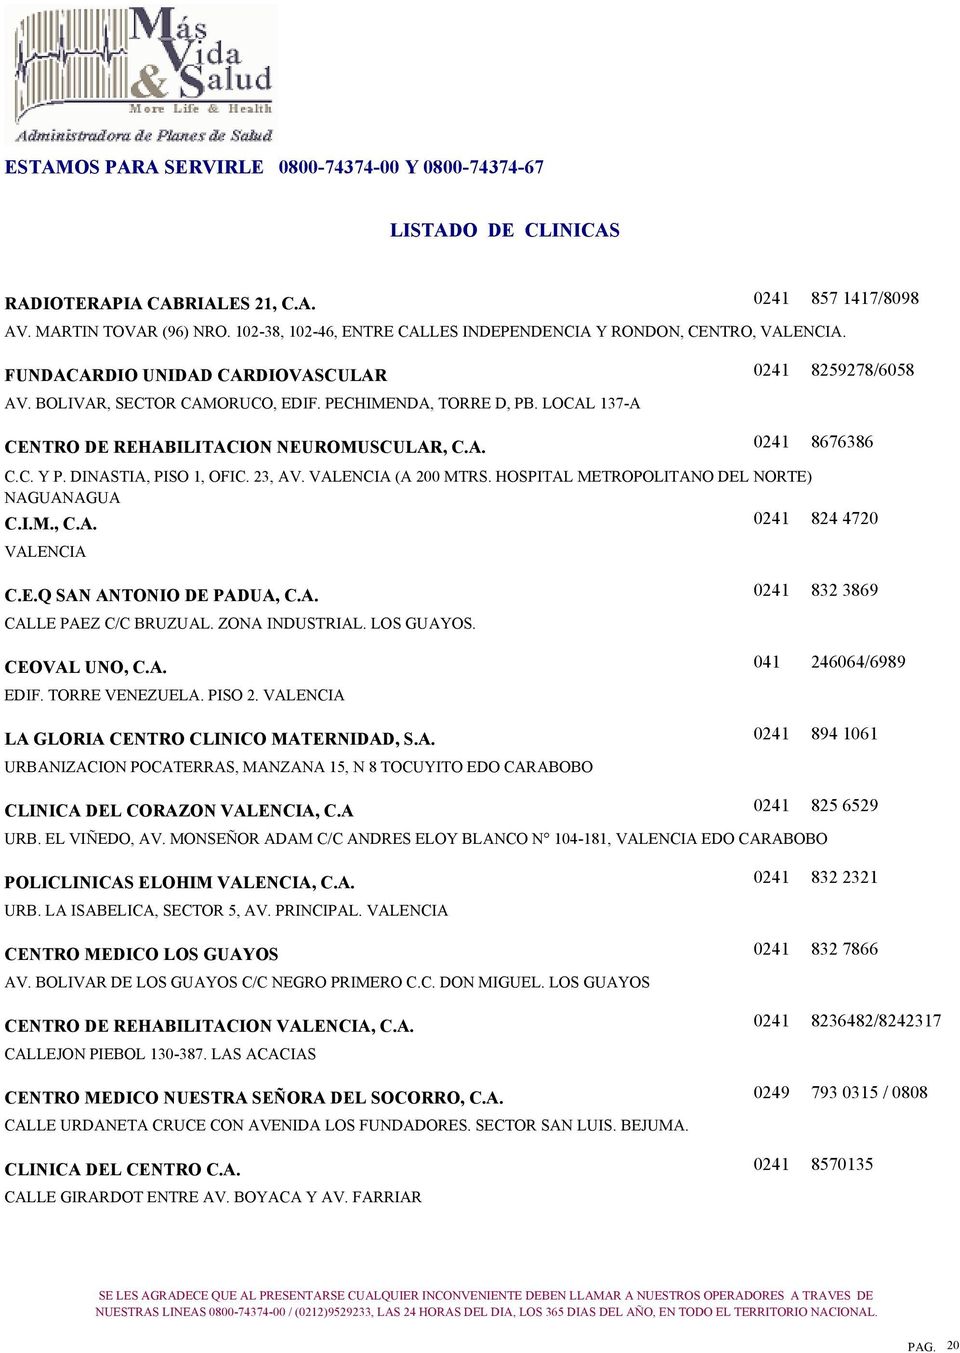 HOSPITAL METROPOLITANO DEL NORTE) NAGUANAGUA C.I.M., C.A. VALENCIA 824 4720 C.E.Q SAN ANTONIO DE PADUA, C.A. CALLE PAEZ C/C BRUZUAL. ZONA INDUSTRIAL. LOS GUAYOS. CEOVAL UNO, C.A. EDIF.